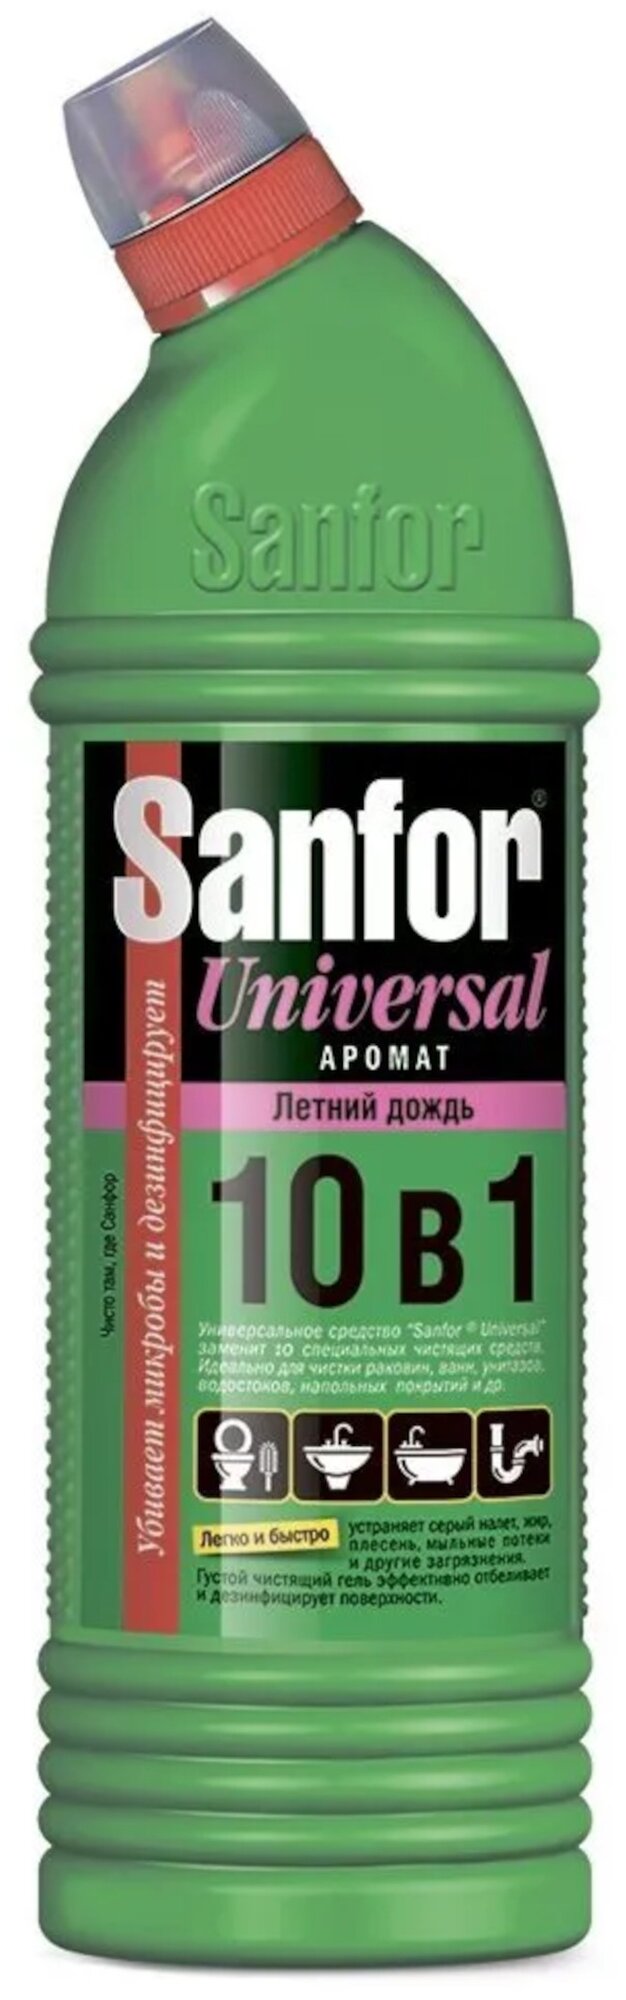 Sanfor гель Universal 10 в 1 Летний дождь